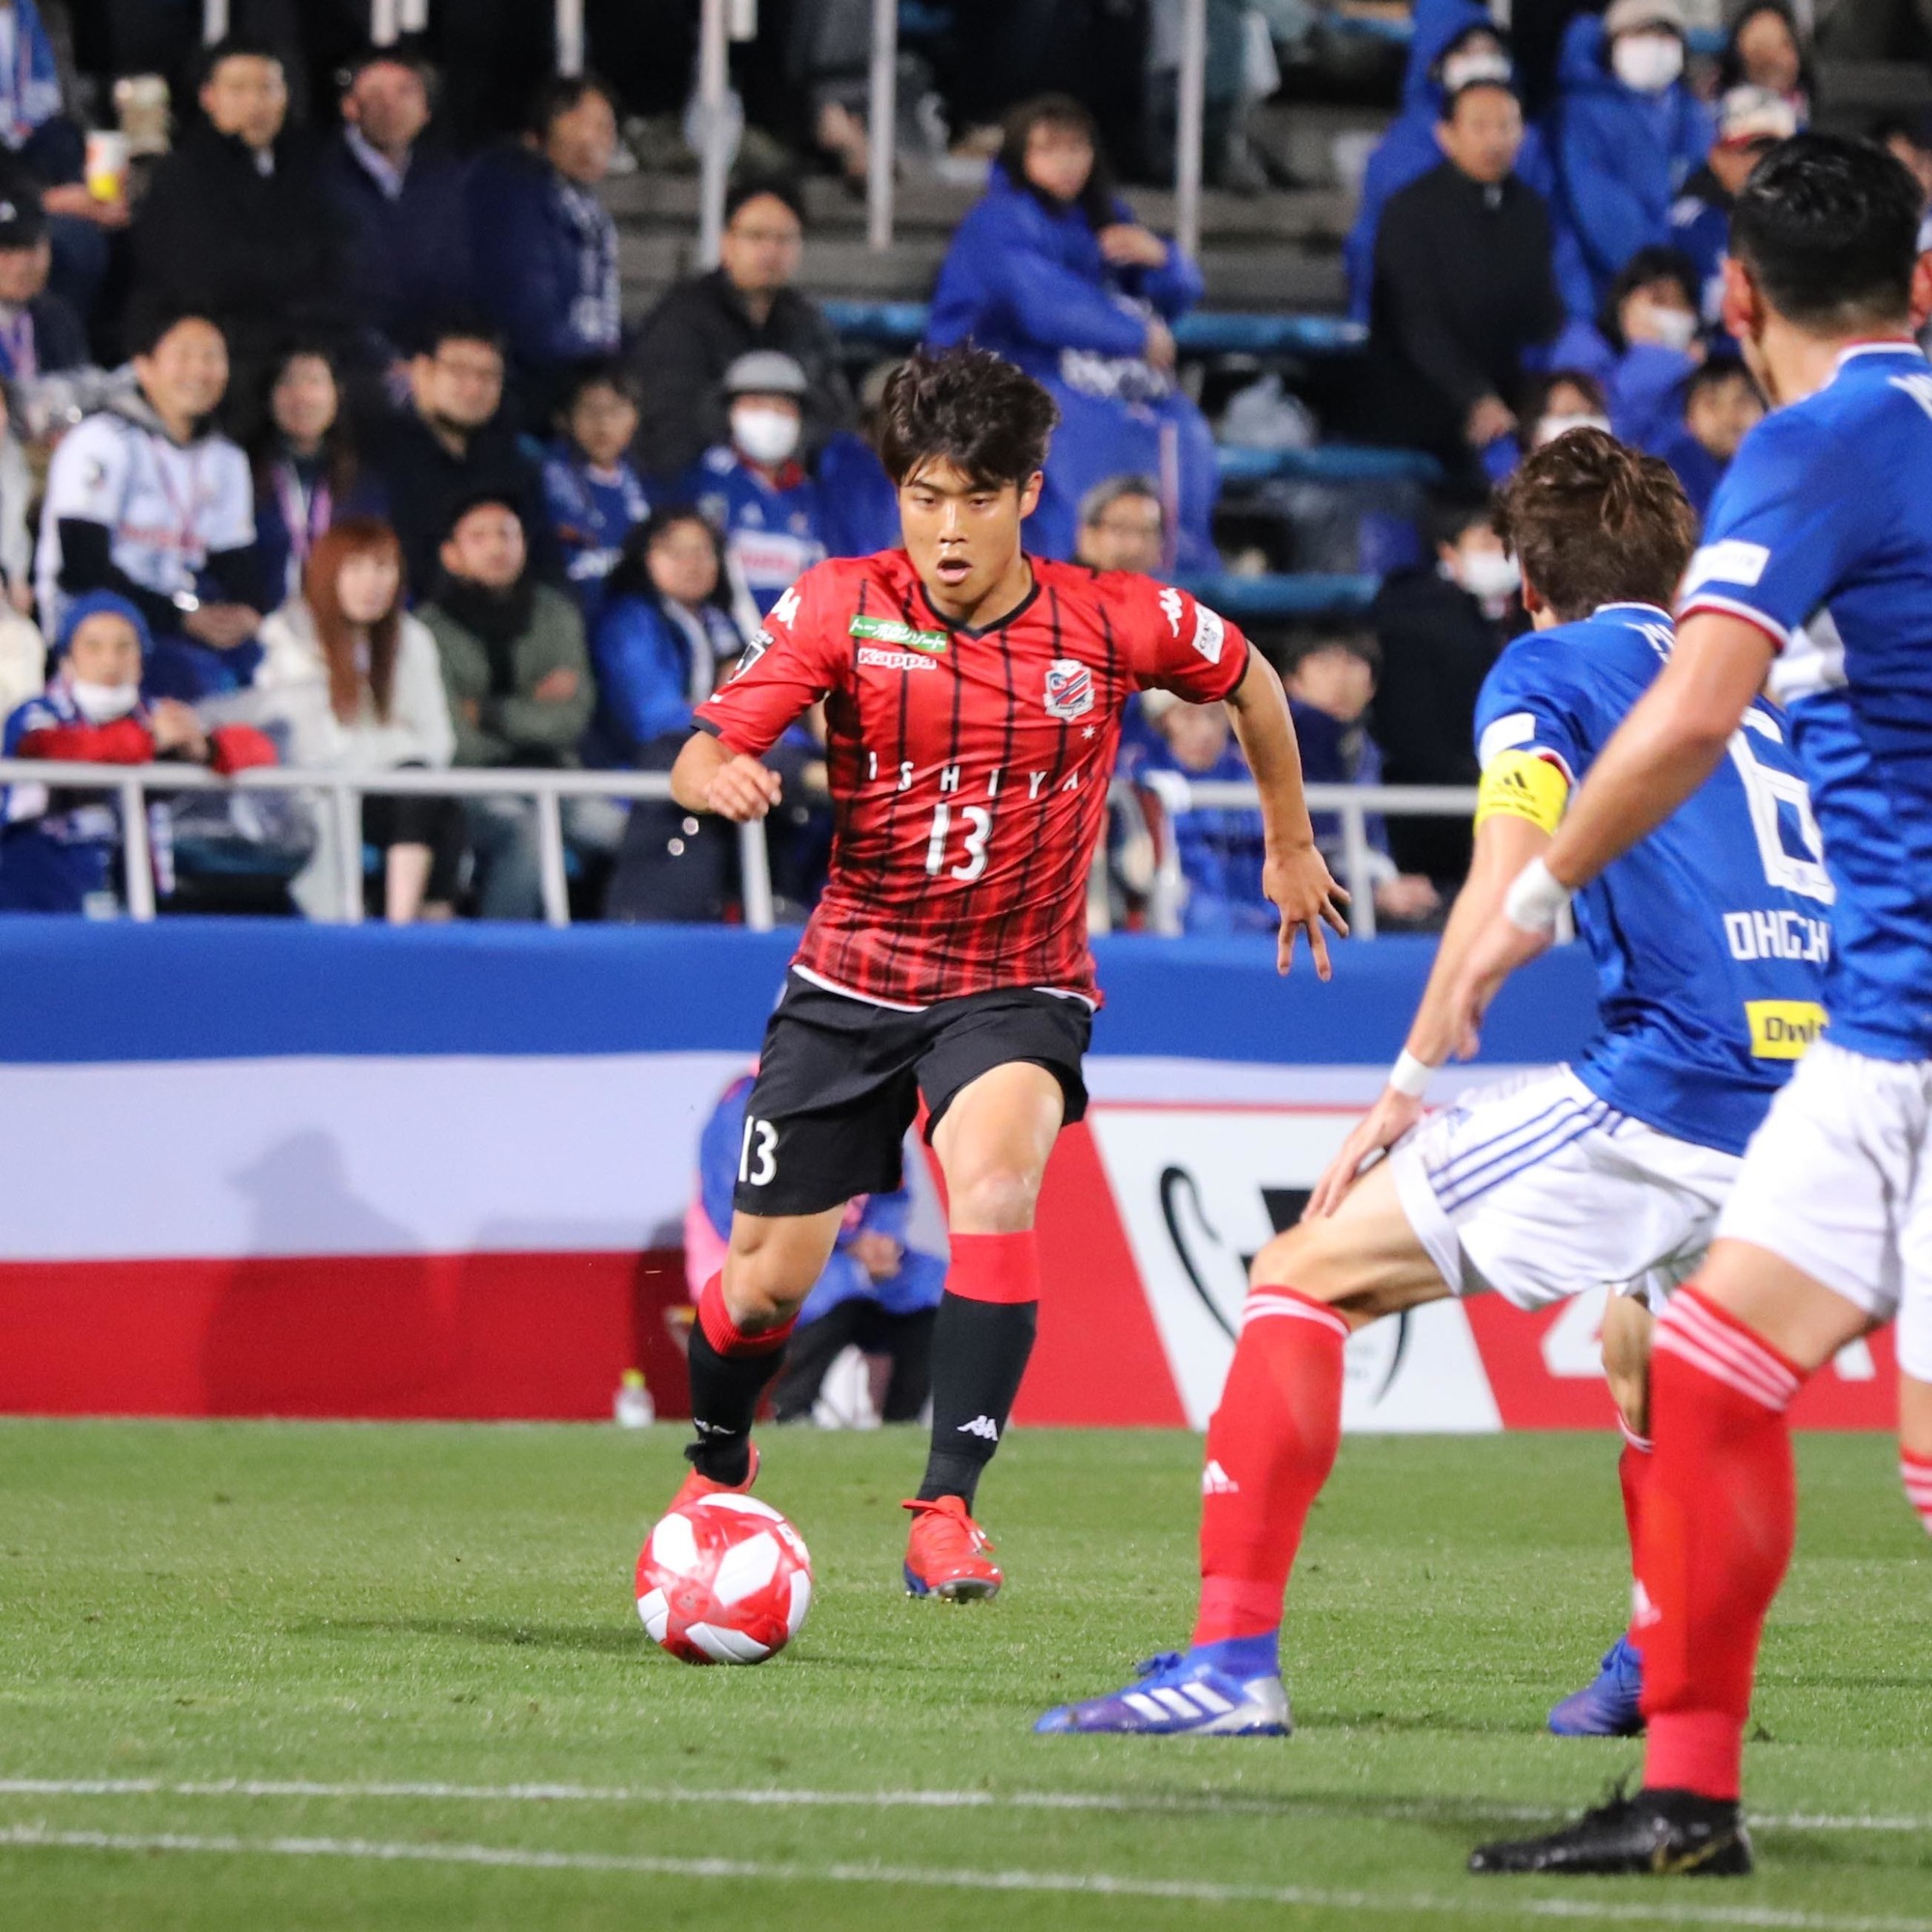 2019/3/6(水) 横浜FM戦 選手コメント (ルヴァンカップグループステージ第1節)